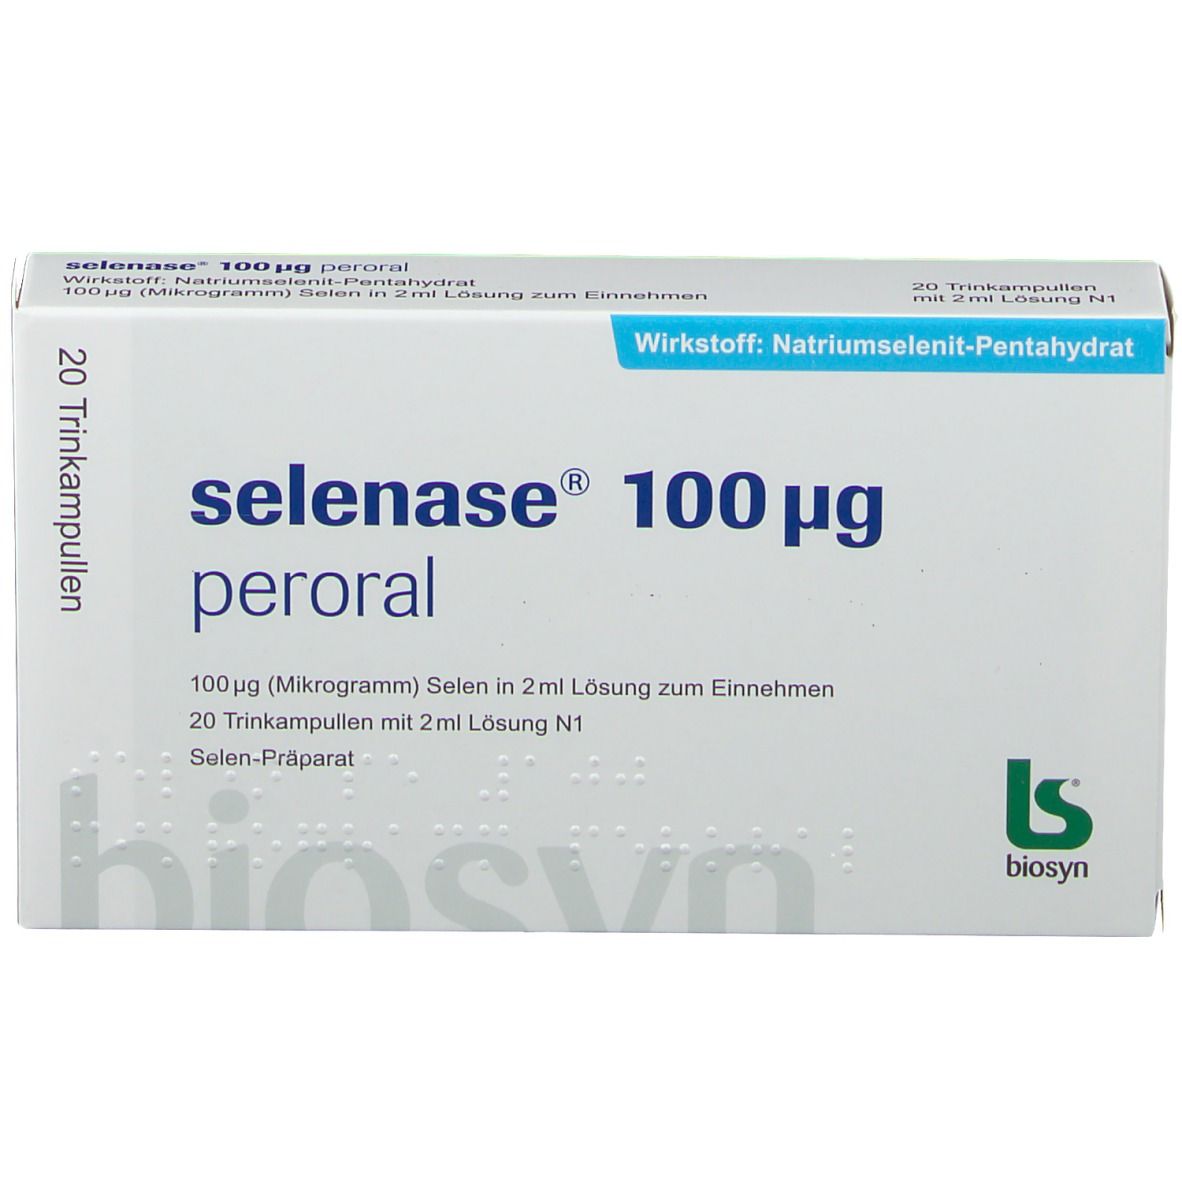 selenase® 100 µg peroral